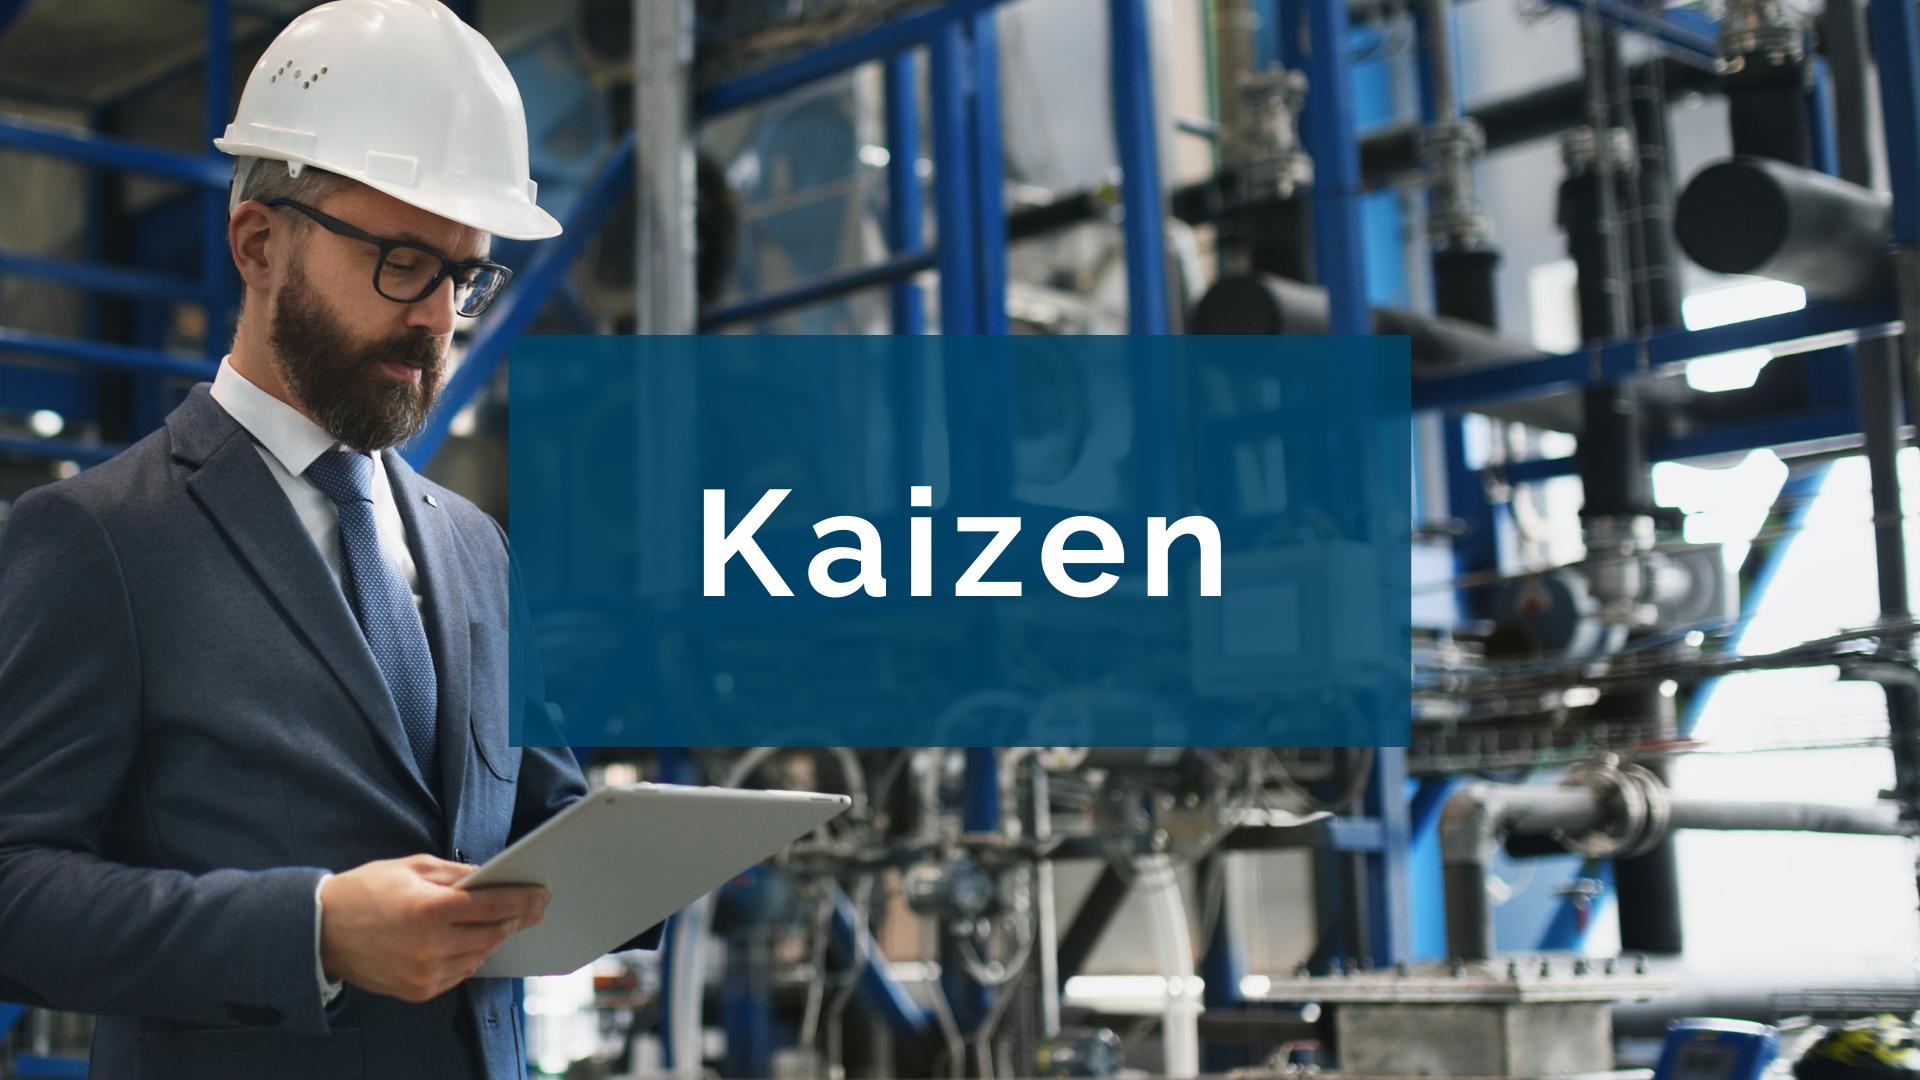 Kaizen or continuous improvement culture